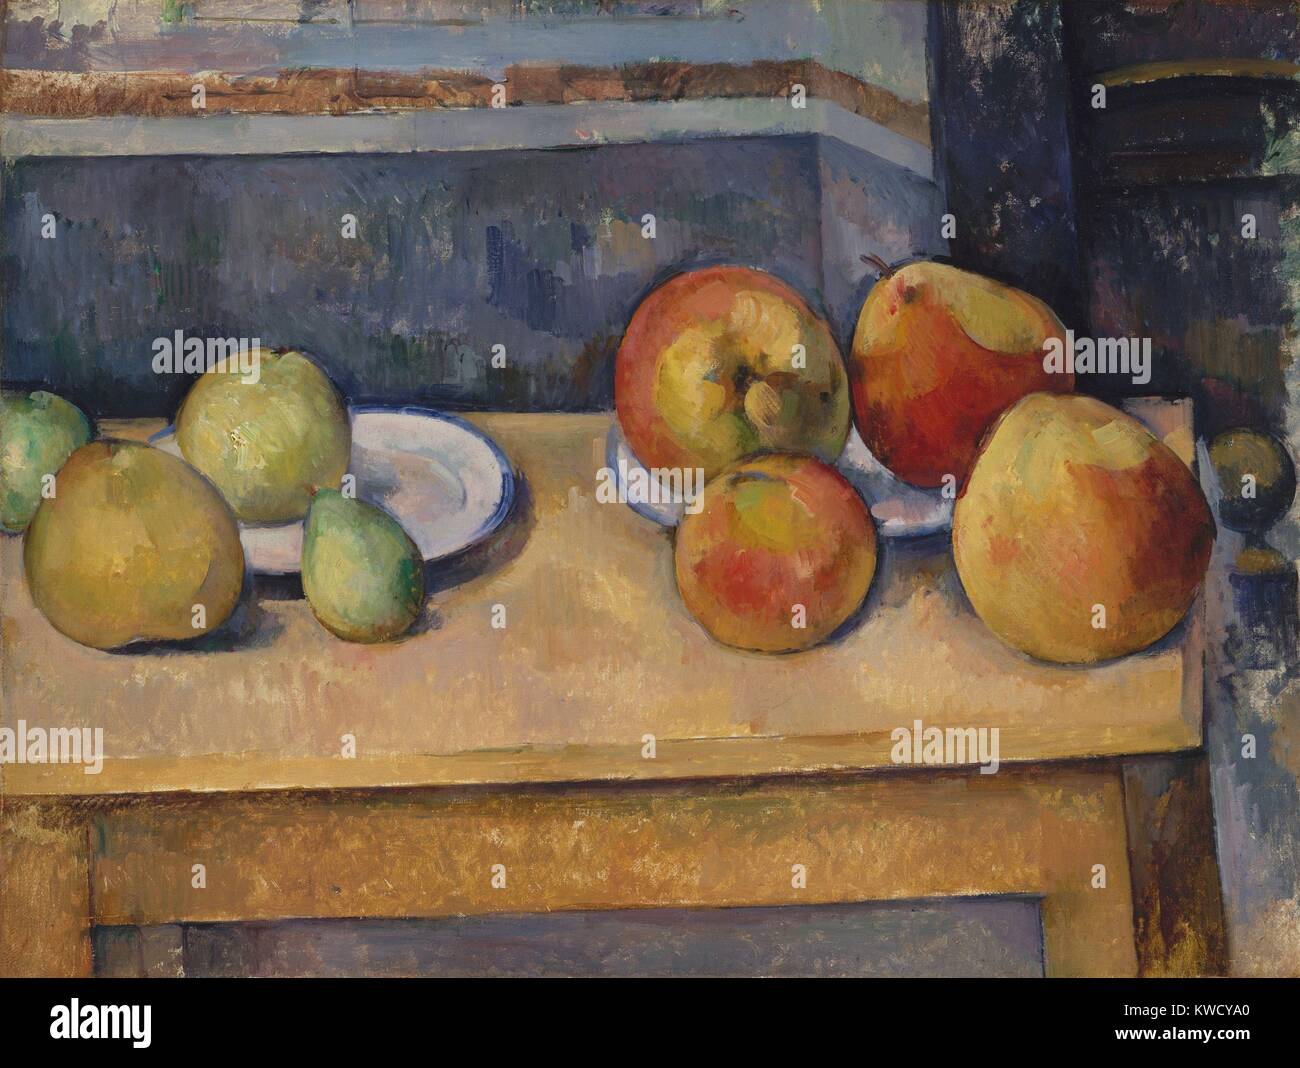 Nature morte avec pommes et poires, de Paul Cézanne, 1891-1892, le français postimpressionnistes peinture à l'huile. La solidité physique des fruits contraste avec l'espace ambigu autour d'eux (BSLOC 2017 5 24) Banque D'Images